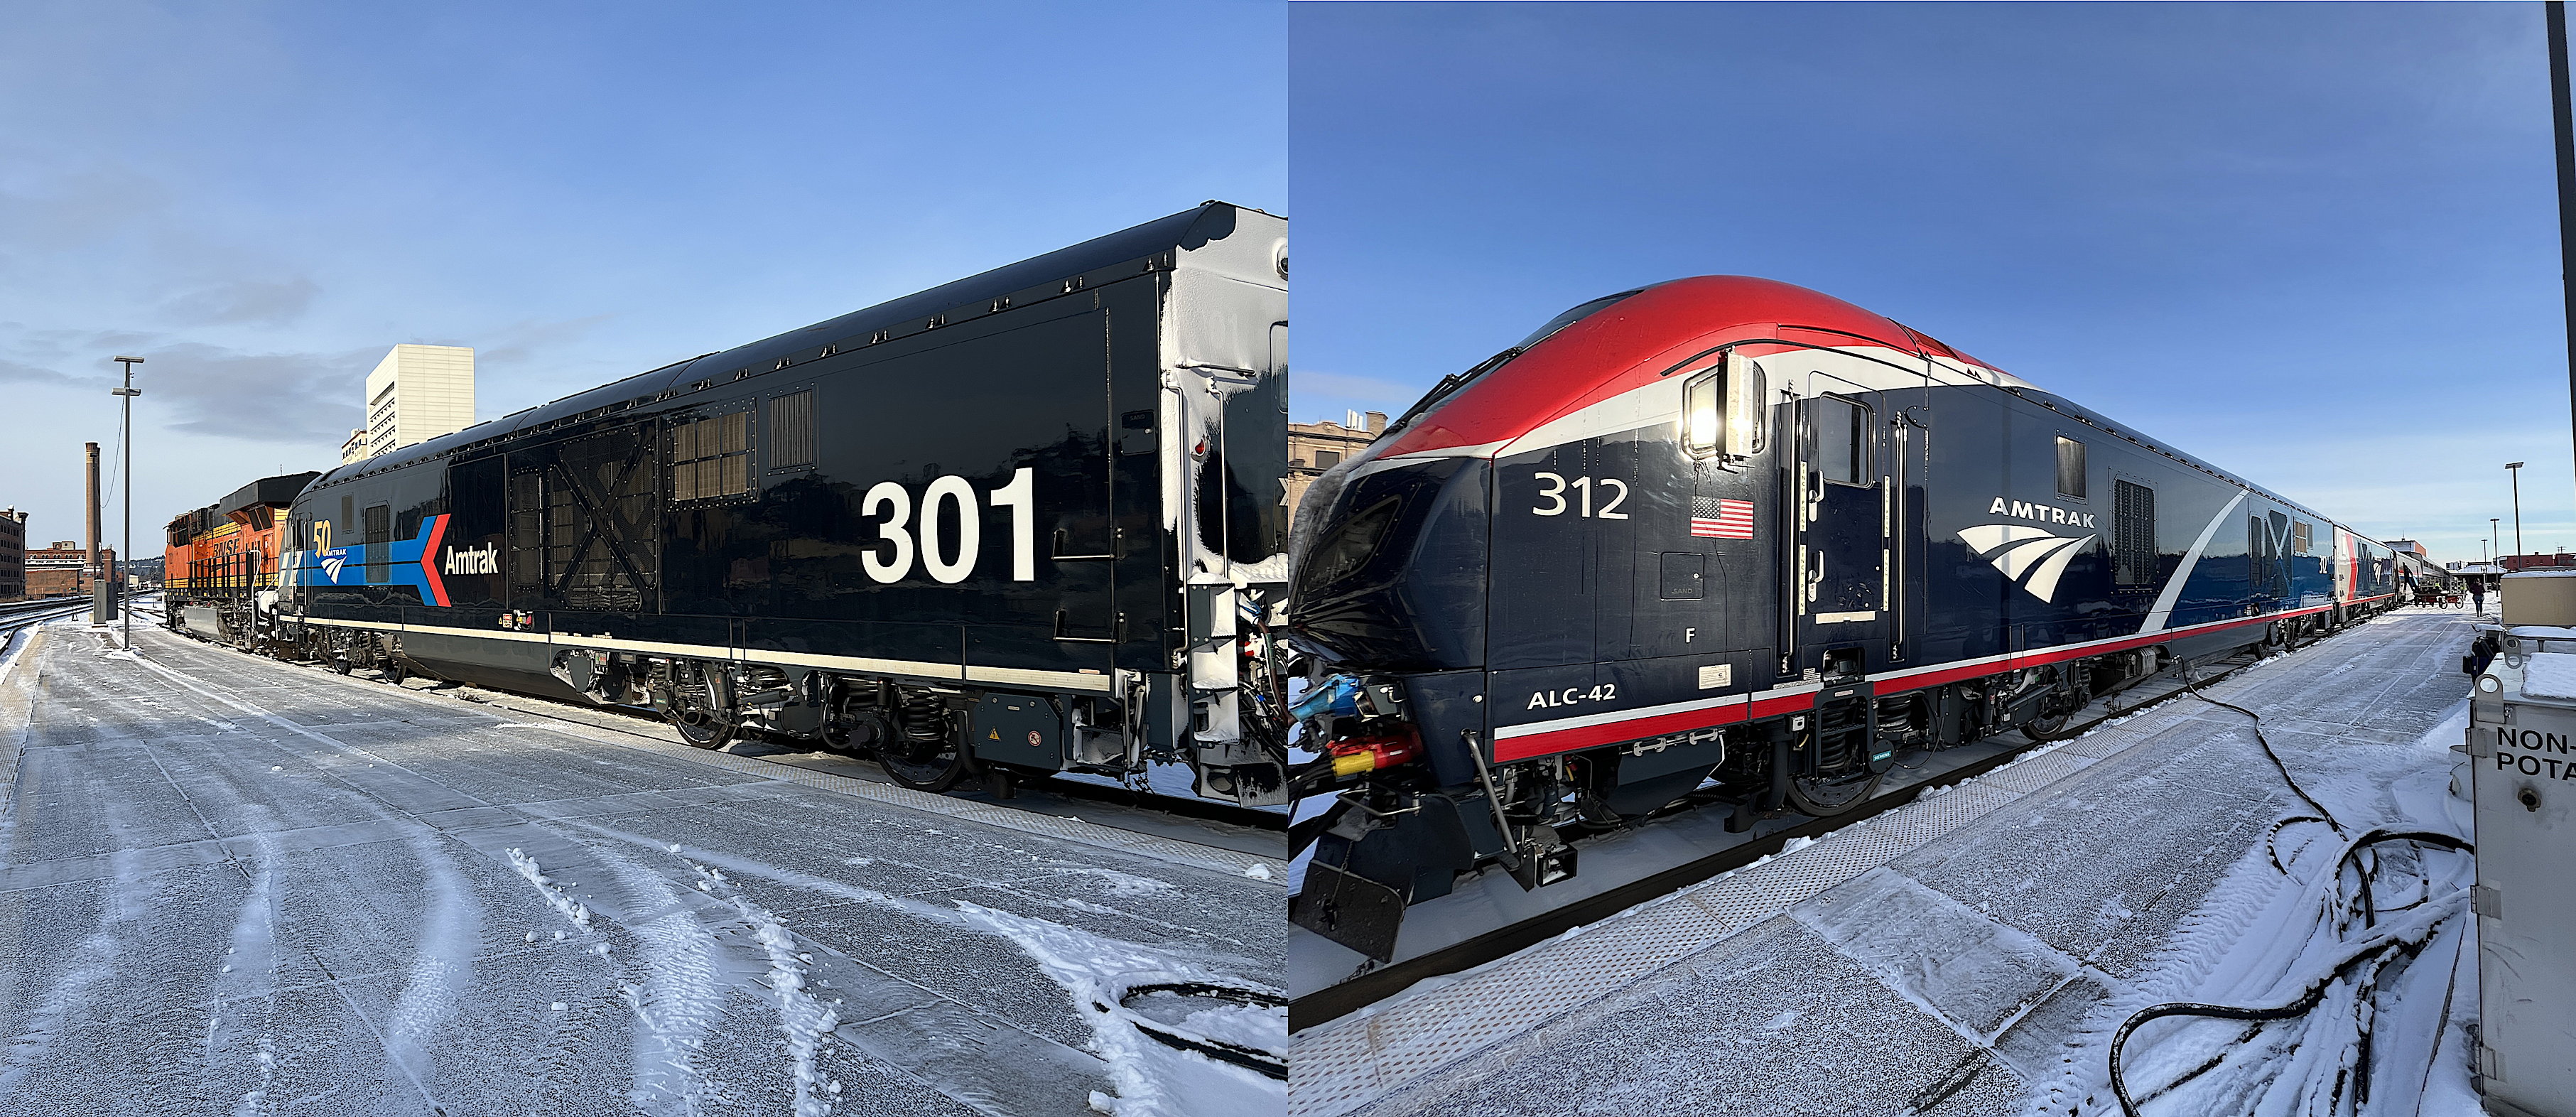 Zwei Bilder, nebeneinander montiert. Links die alte Burlington Northern Lok und eine neuere Amtrak-Maschine. Rechts Bild, die zwei neueren, eigentlich seit Chicago zum Zug gehörenden Maschinen von Amtrak